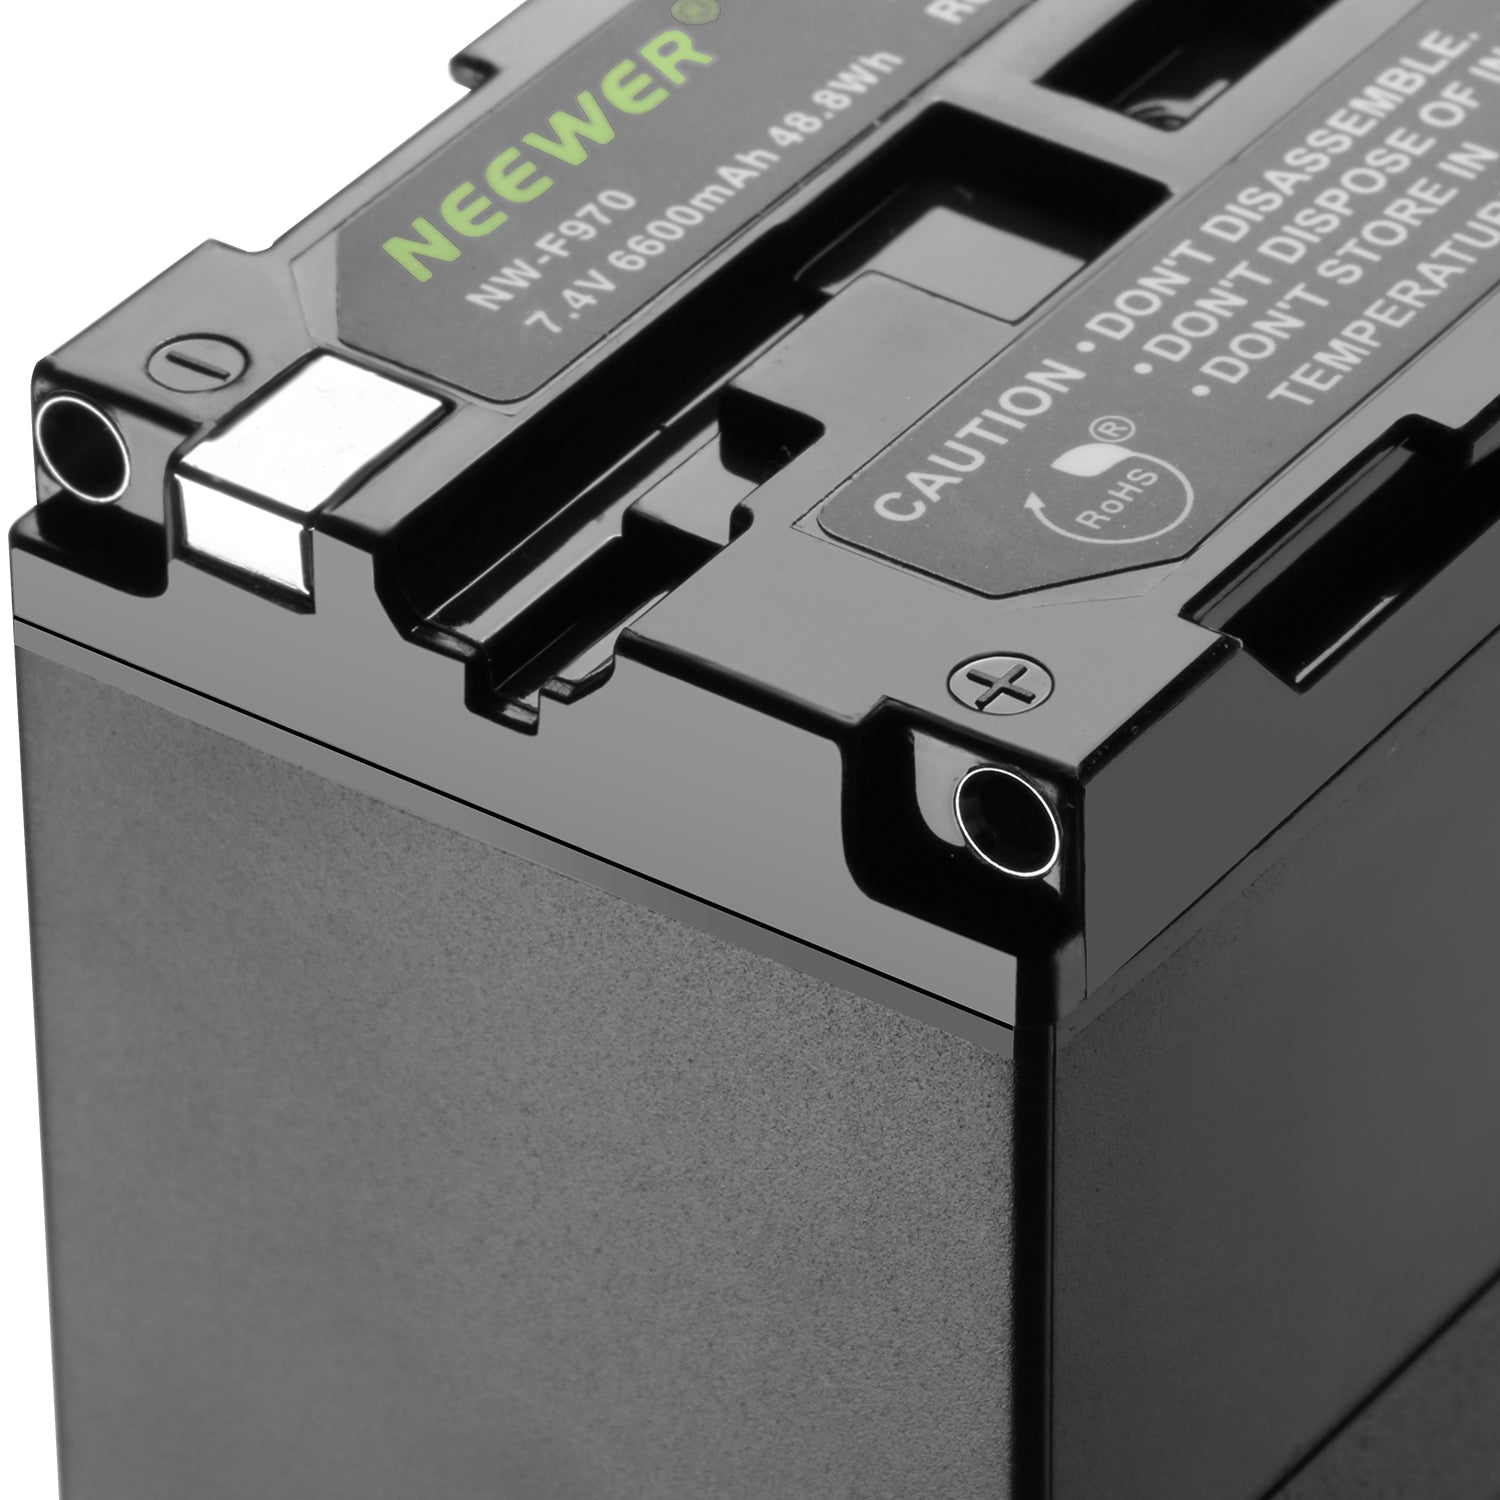 Batterie pour Asus X72J pour Asus portable 6600 mAh - BatteryEmpire